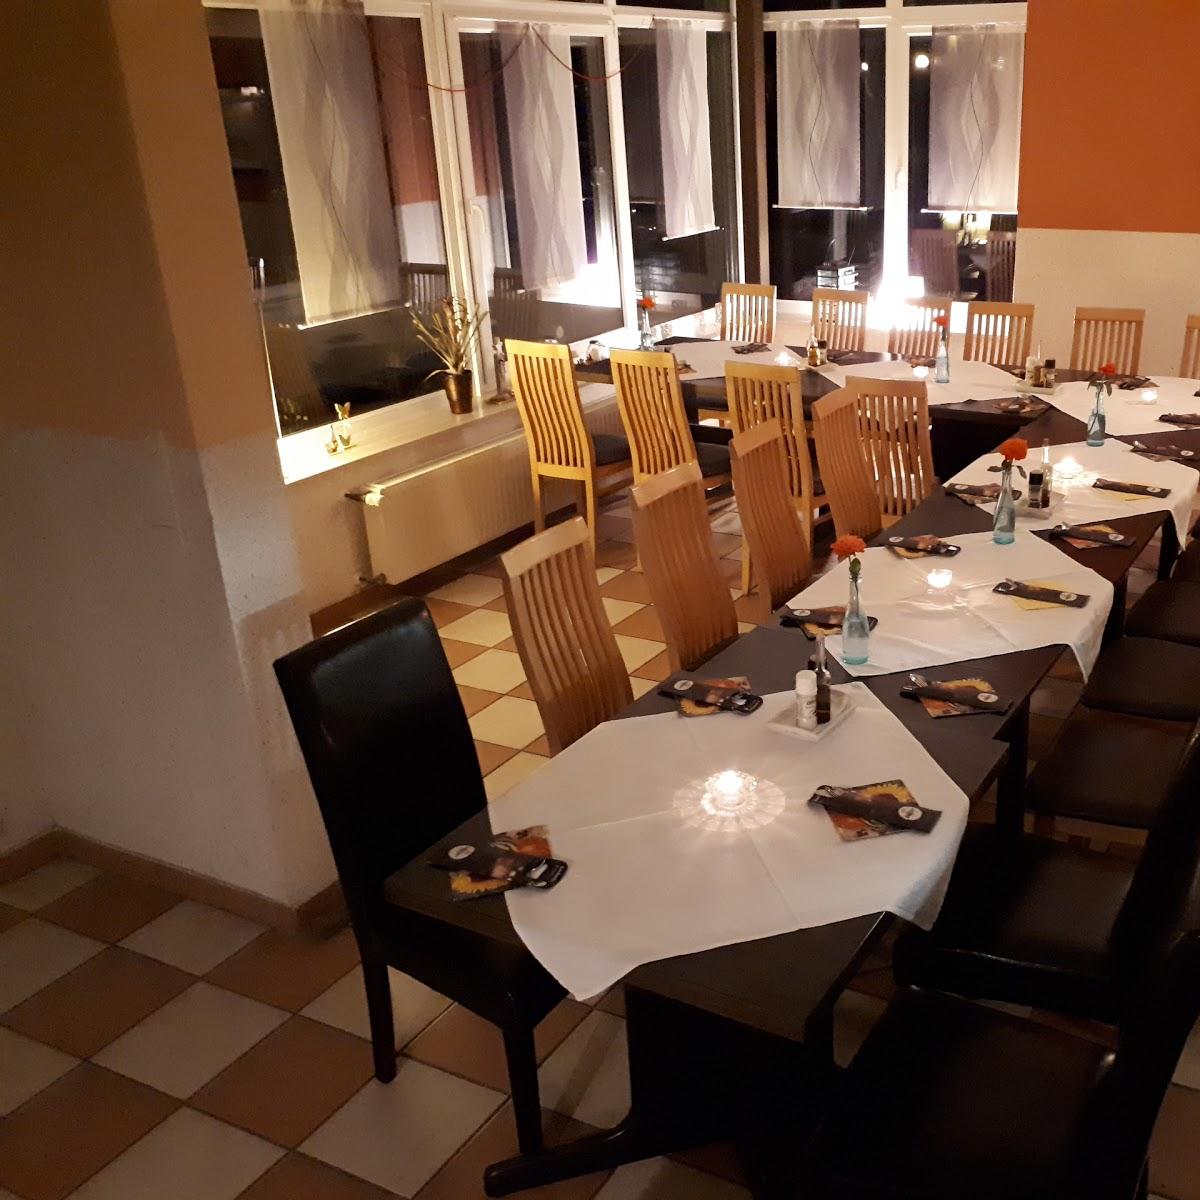 Restaurant "Seestübchen" in  Walchum